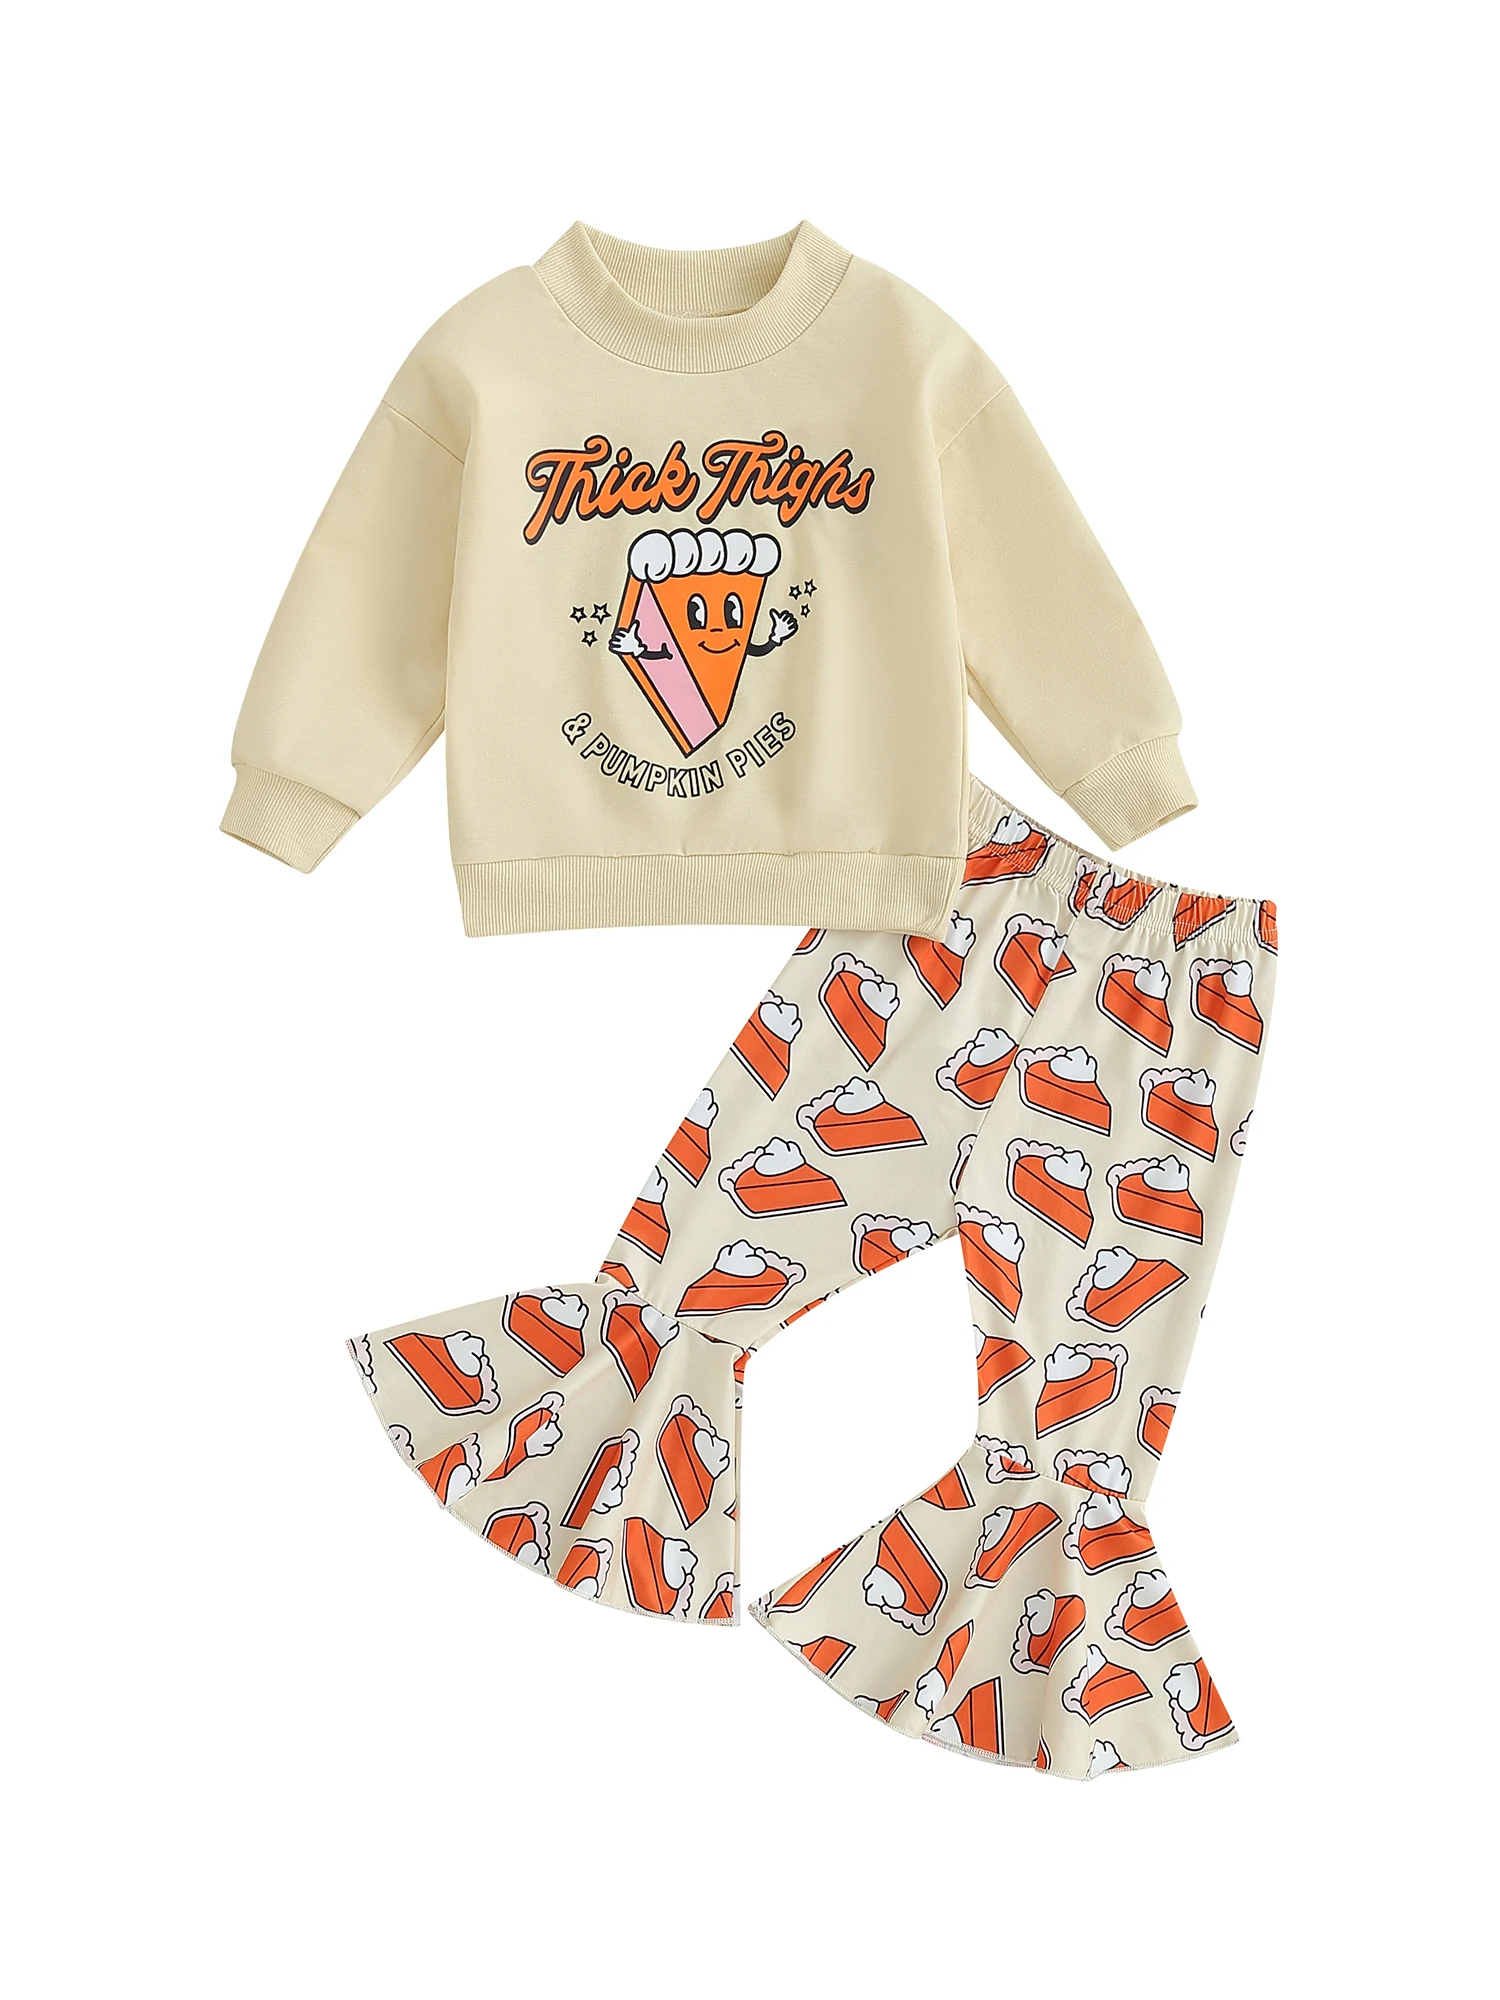 Dítě Chlapci 3 Kus Oblečení Dinosaurus Tisk Mikiny s Kapucí Dlouhý Rukáv T-Shirt a Jogger Kalhoty Set Rozkošný Oblečení pro Podzim